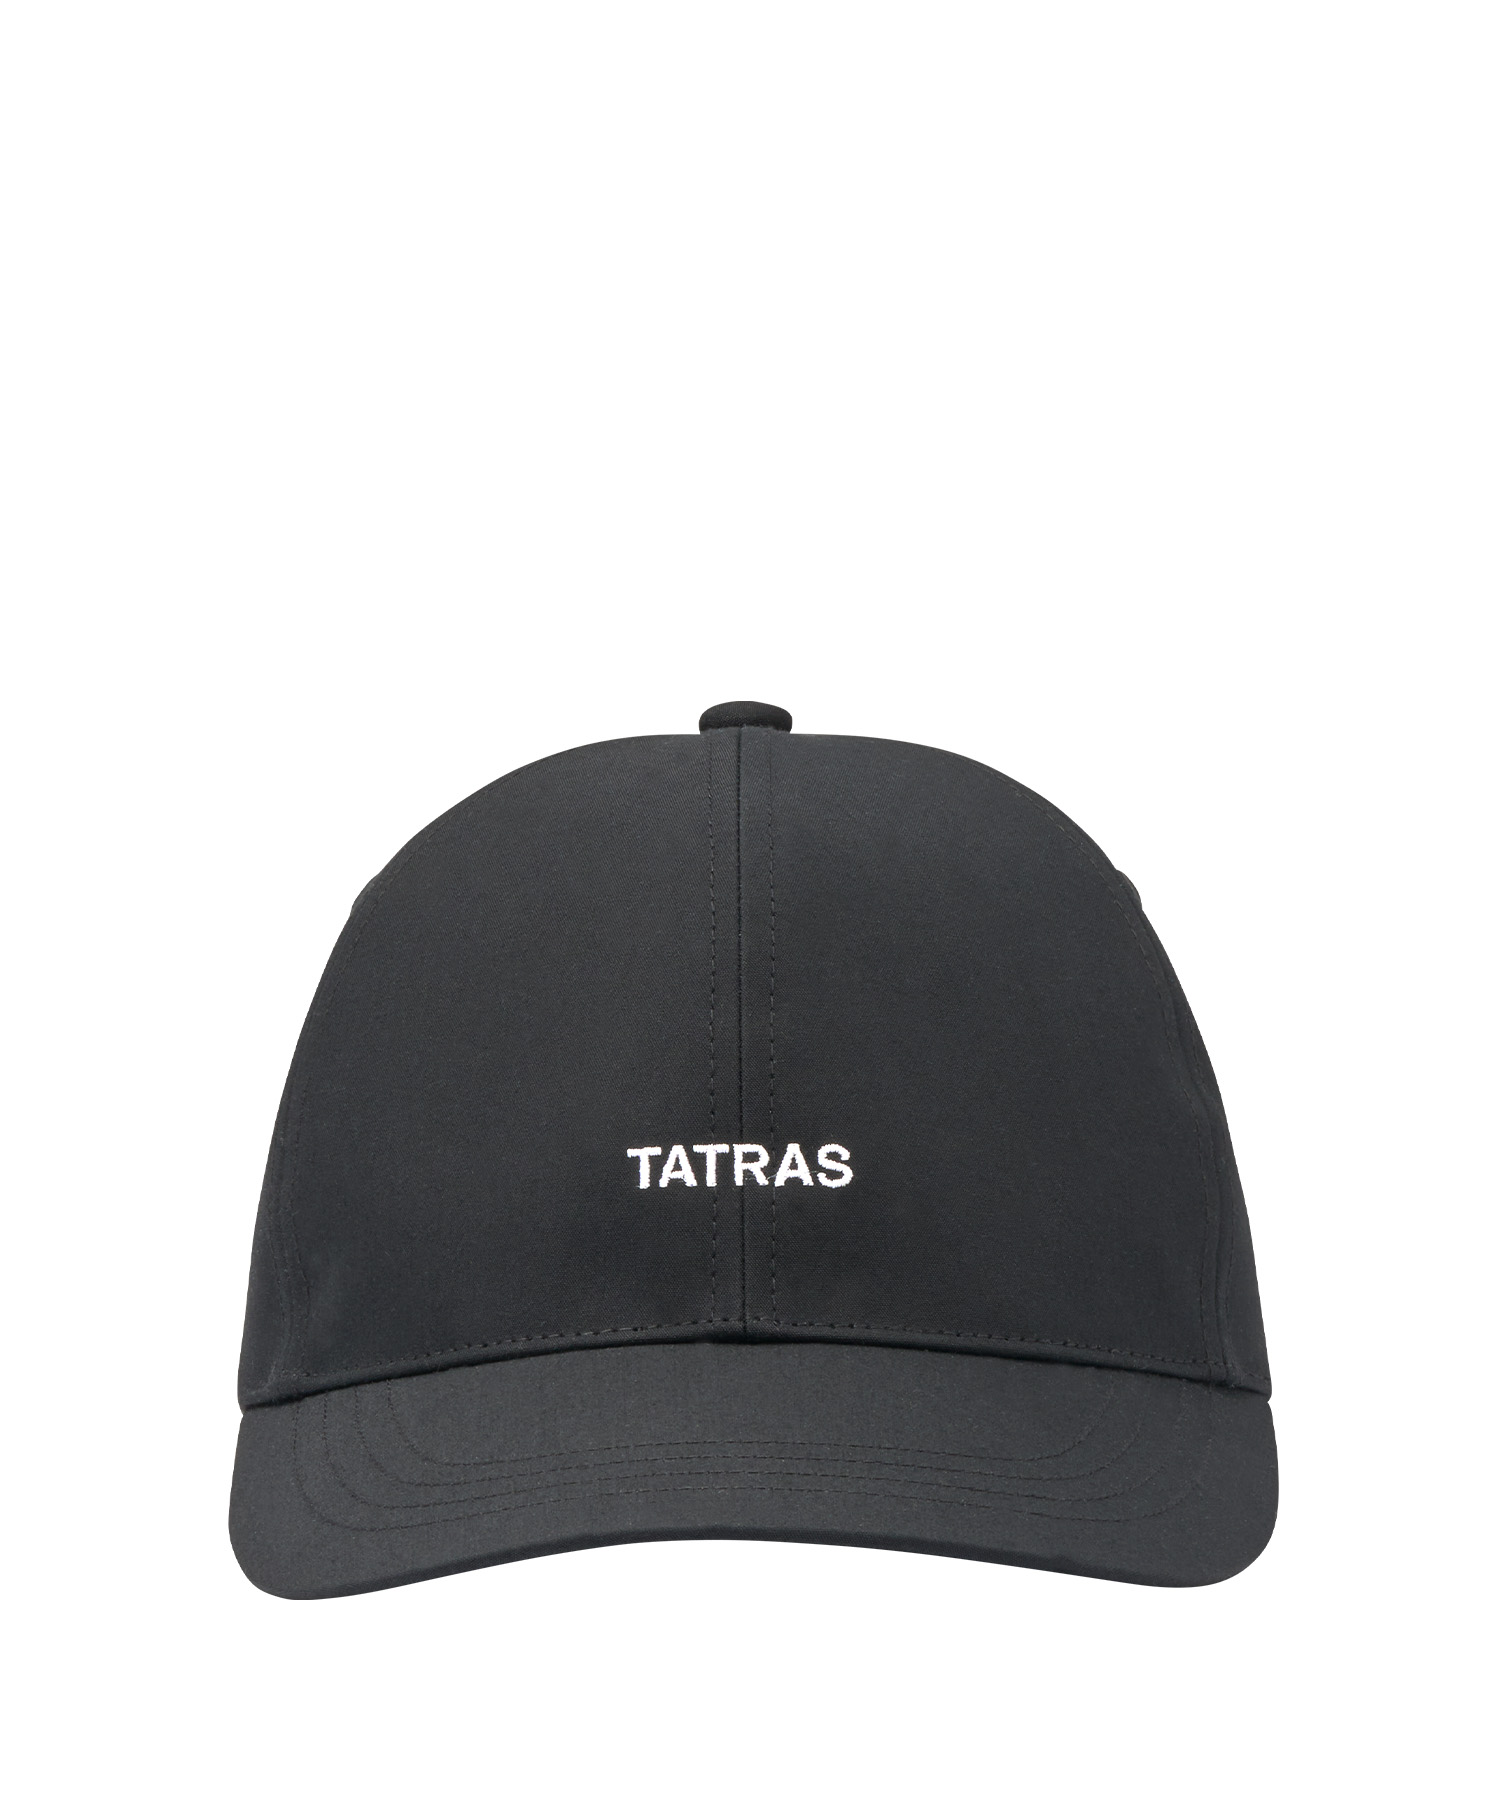 【公式】TATRAS (タトラス) VARISMO ヴァリスモ BLACK/01 サイズ:F 帽子 メンズ